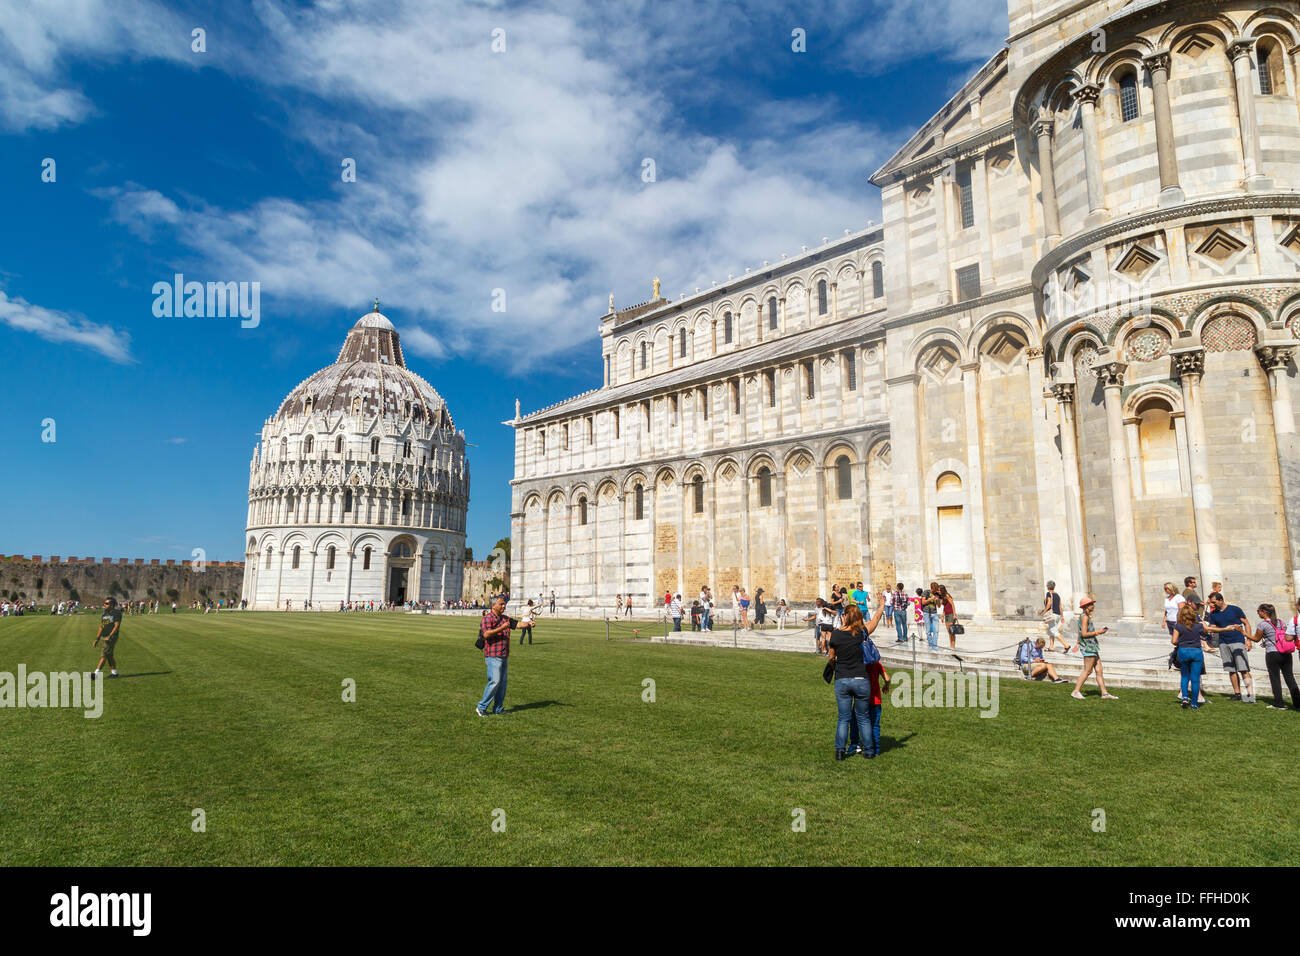 PISA, Italien - 21. September 2015: Seitenansicht des historischen alten Pisa Kathedrale Cathedral Square in Pisa, Italien. Stockfoto